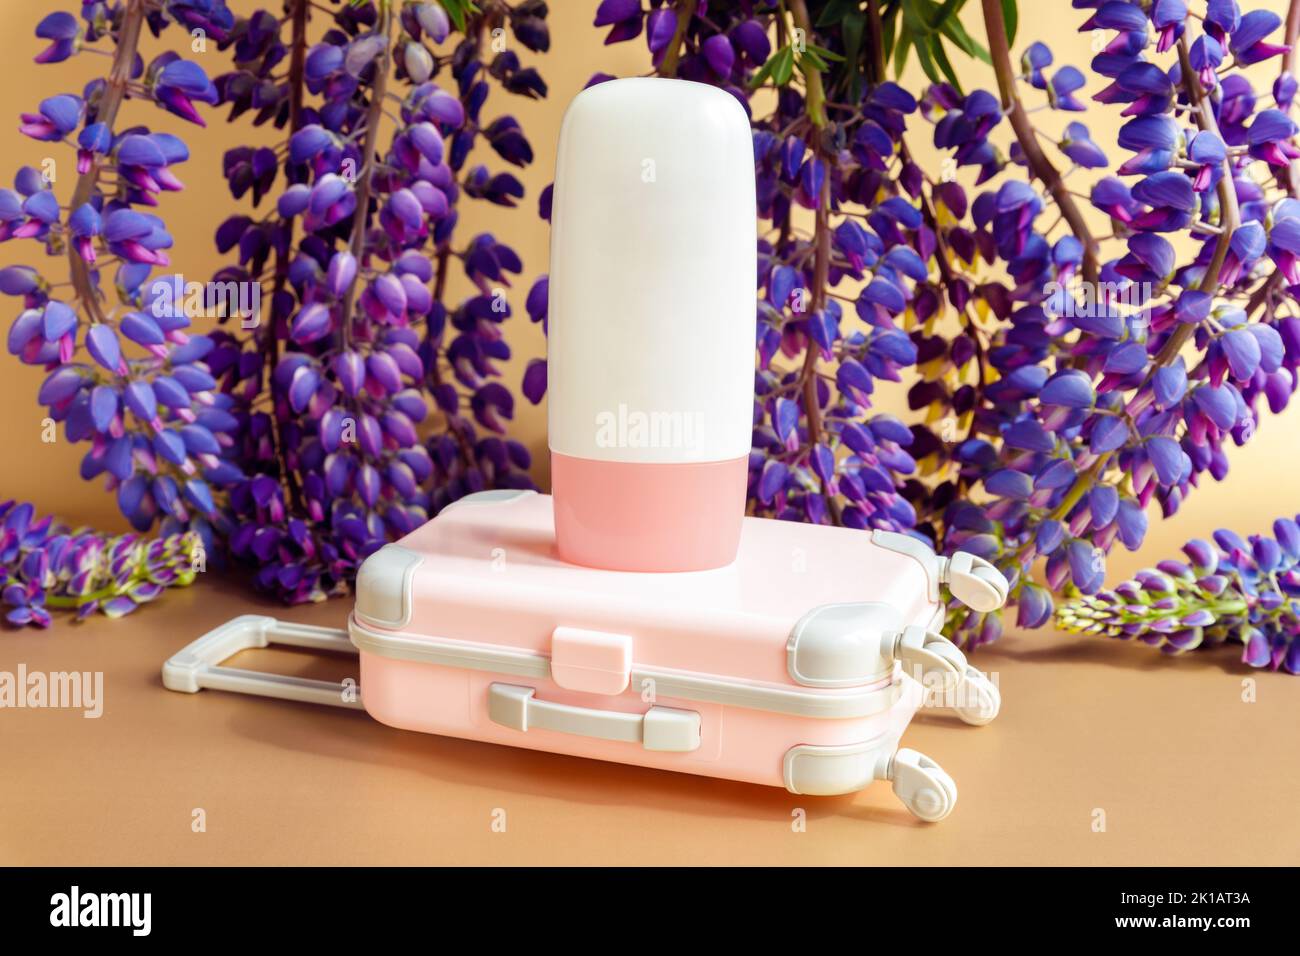 Bouteille de cosmétique Mockup blanche avec bouchon à vis rose, petite valise de voyage rose jouet et fleurs lupin pourpres beaucoup sur fond marron. Maquette, fro Banque D'Images